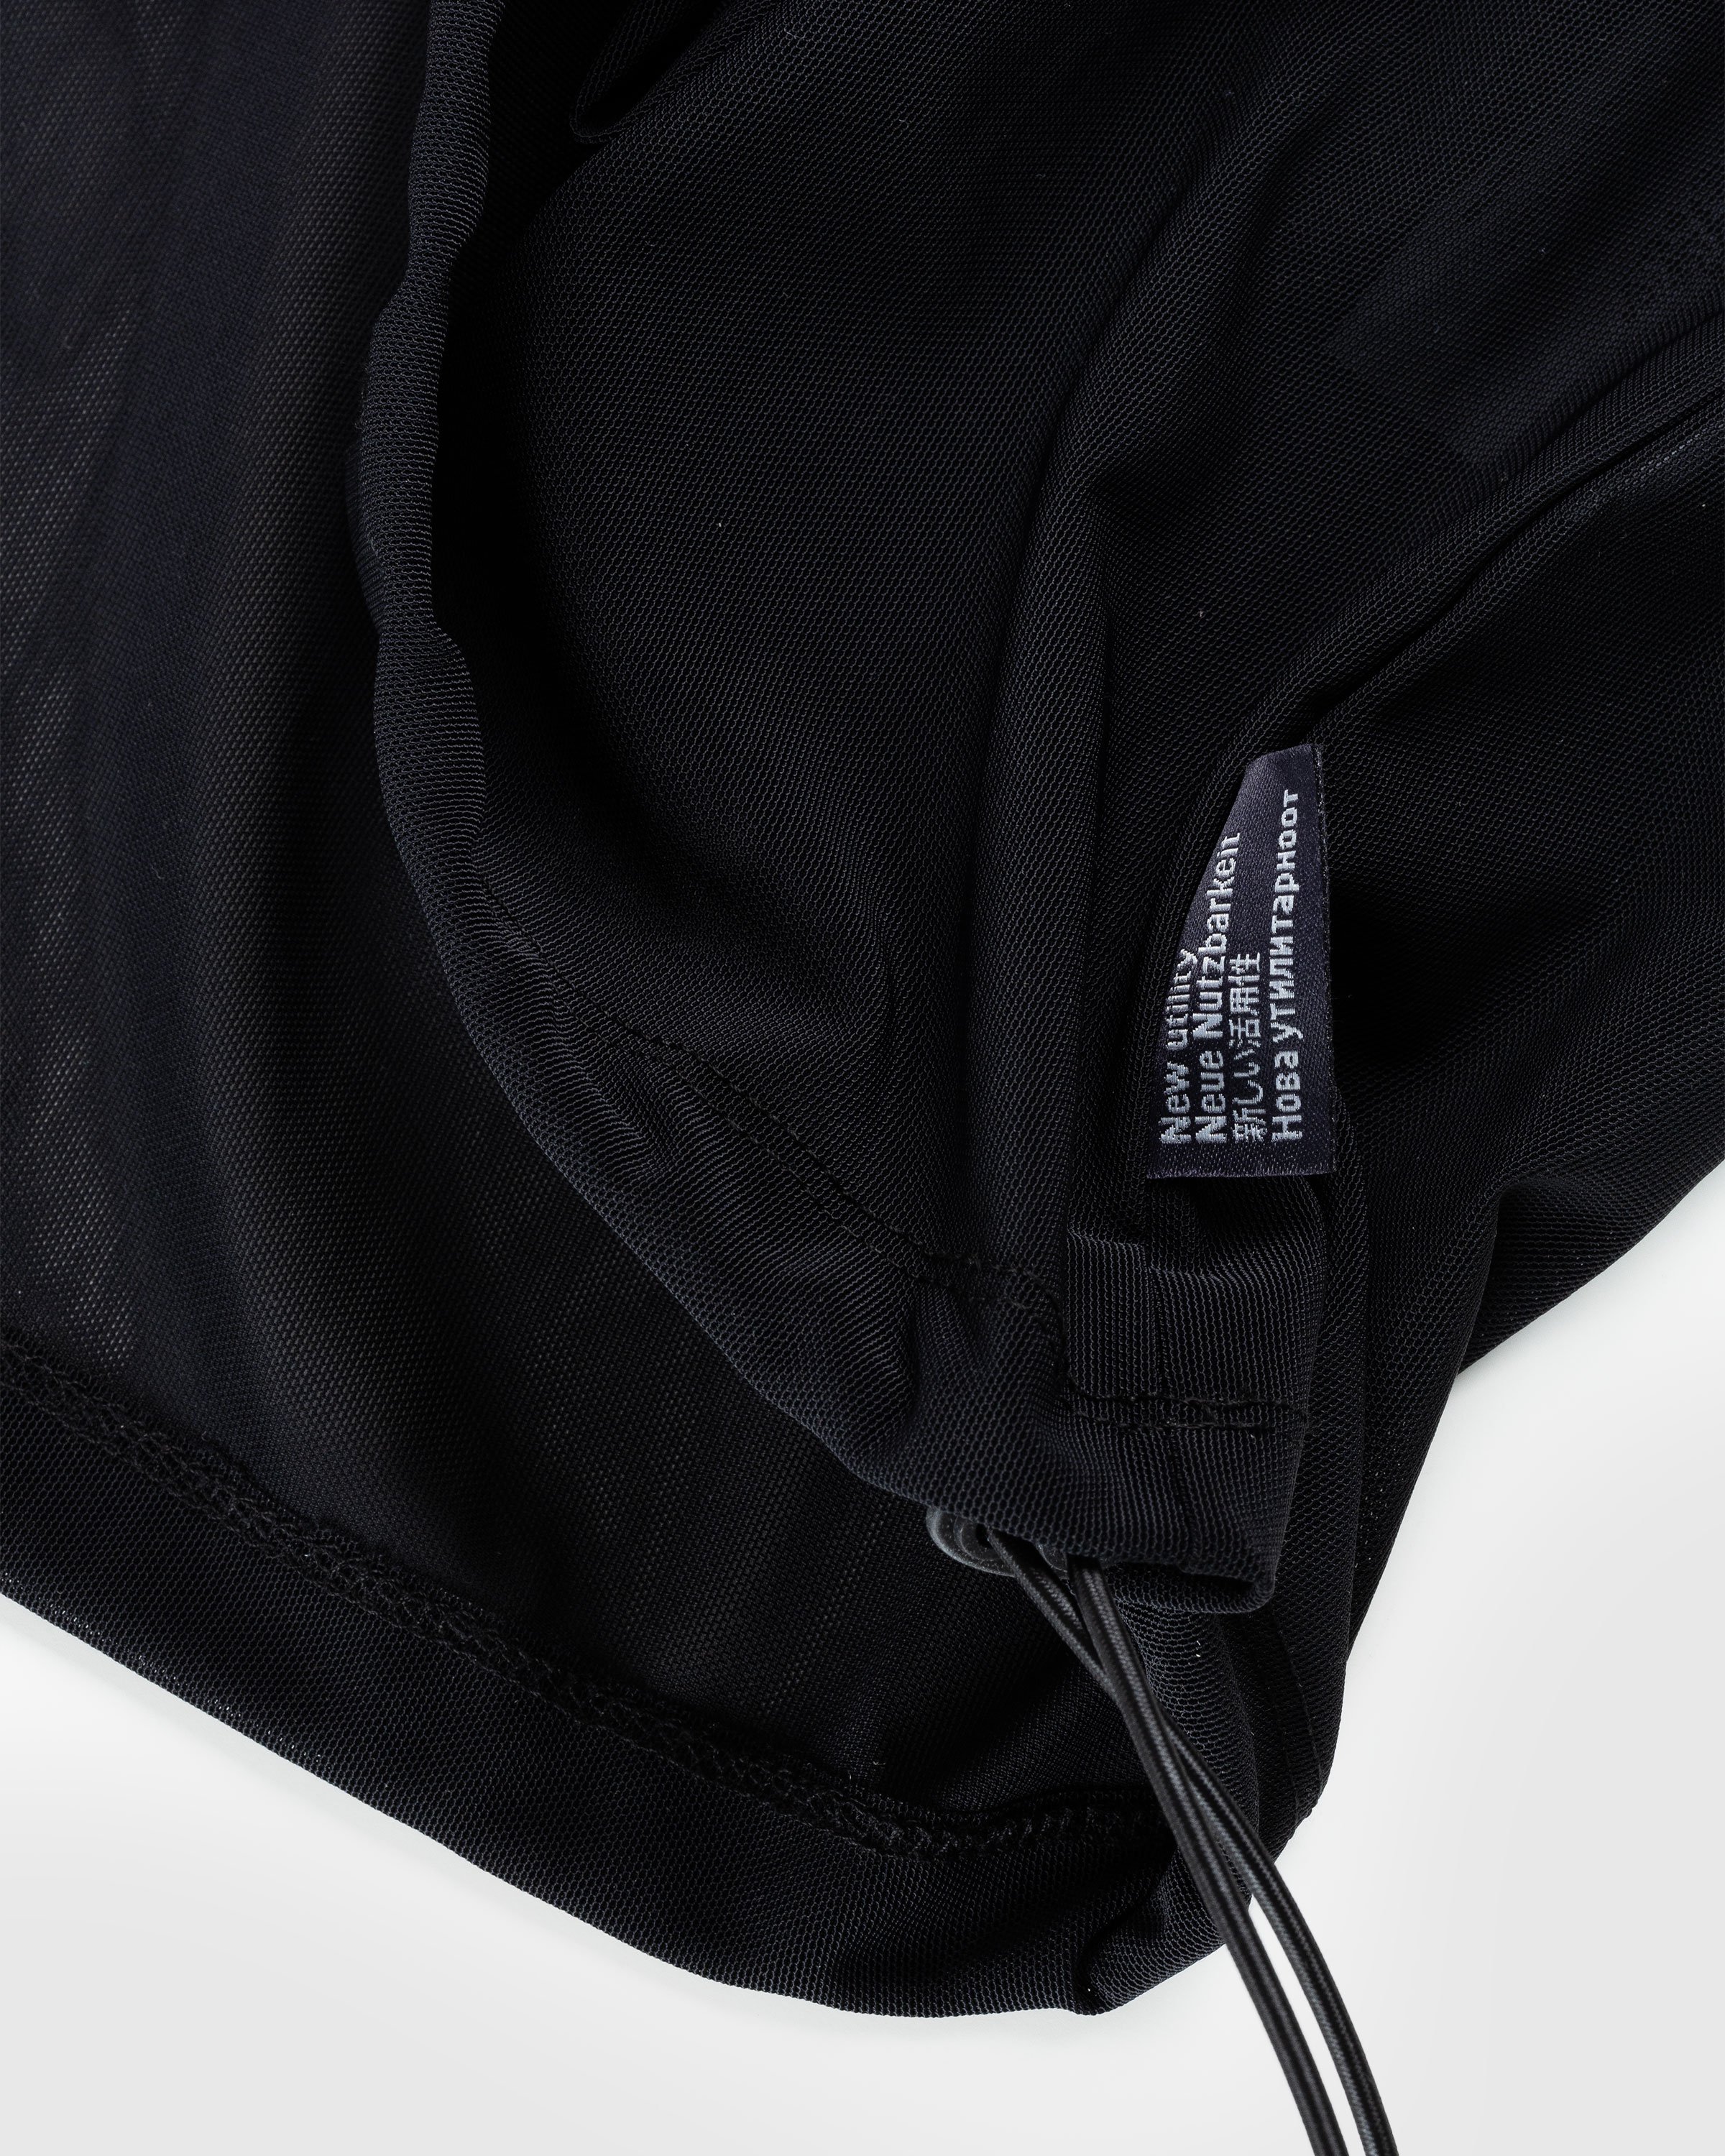 AFFXWRKS - Transit Mesh Pullover Black - Clothing - Black - Image 5